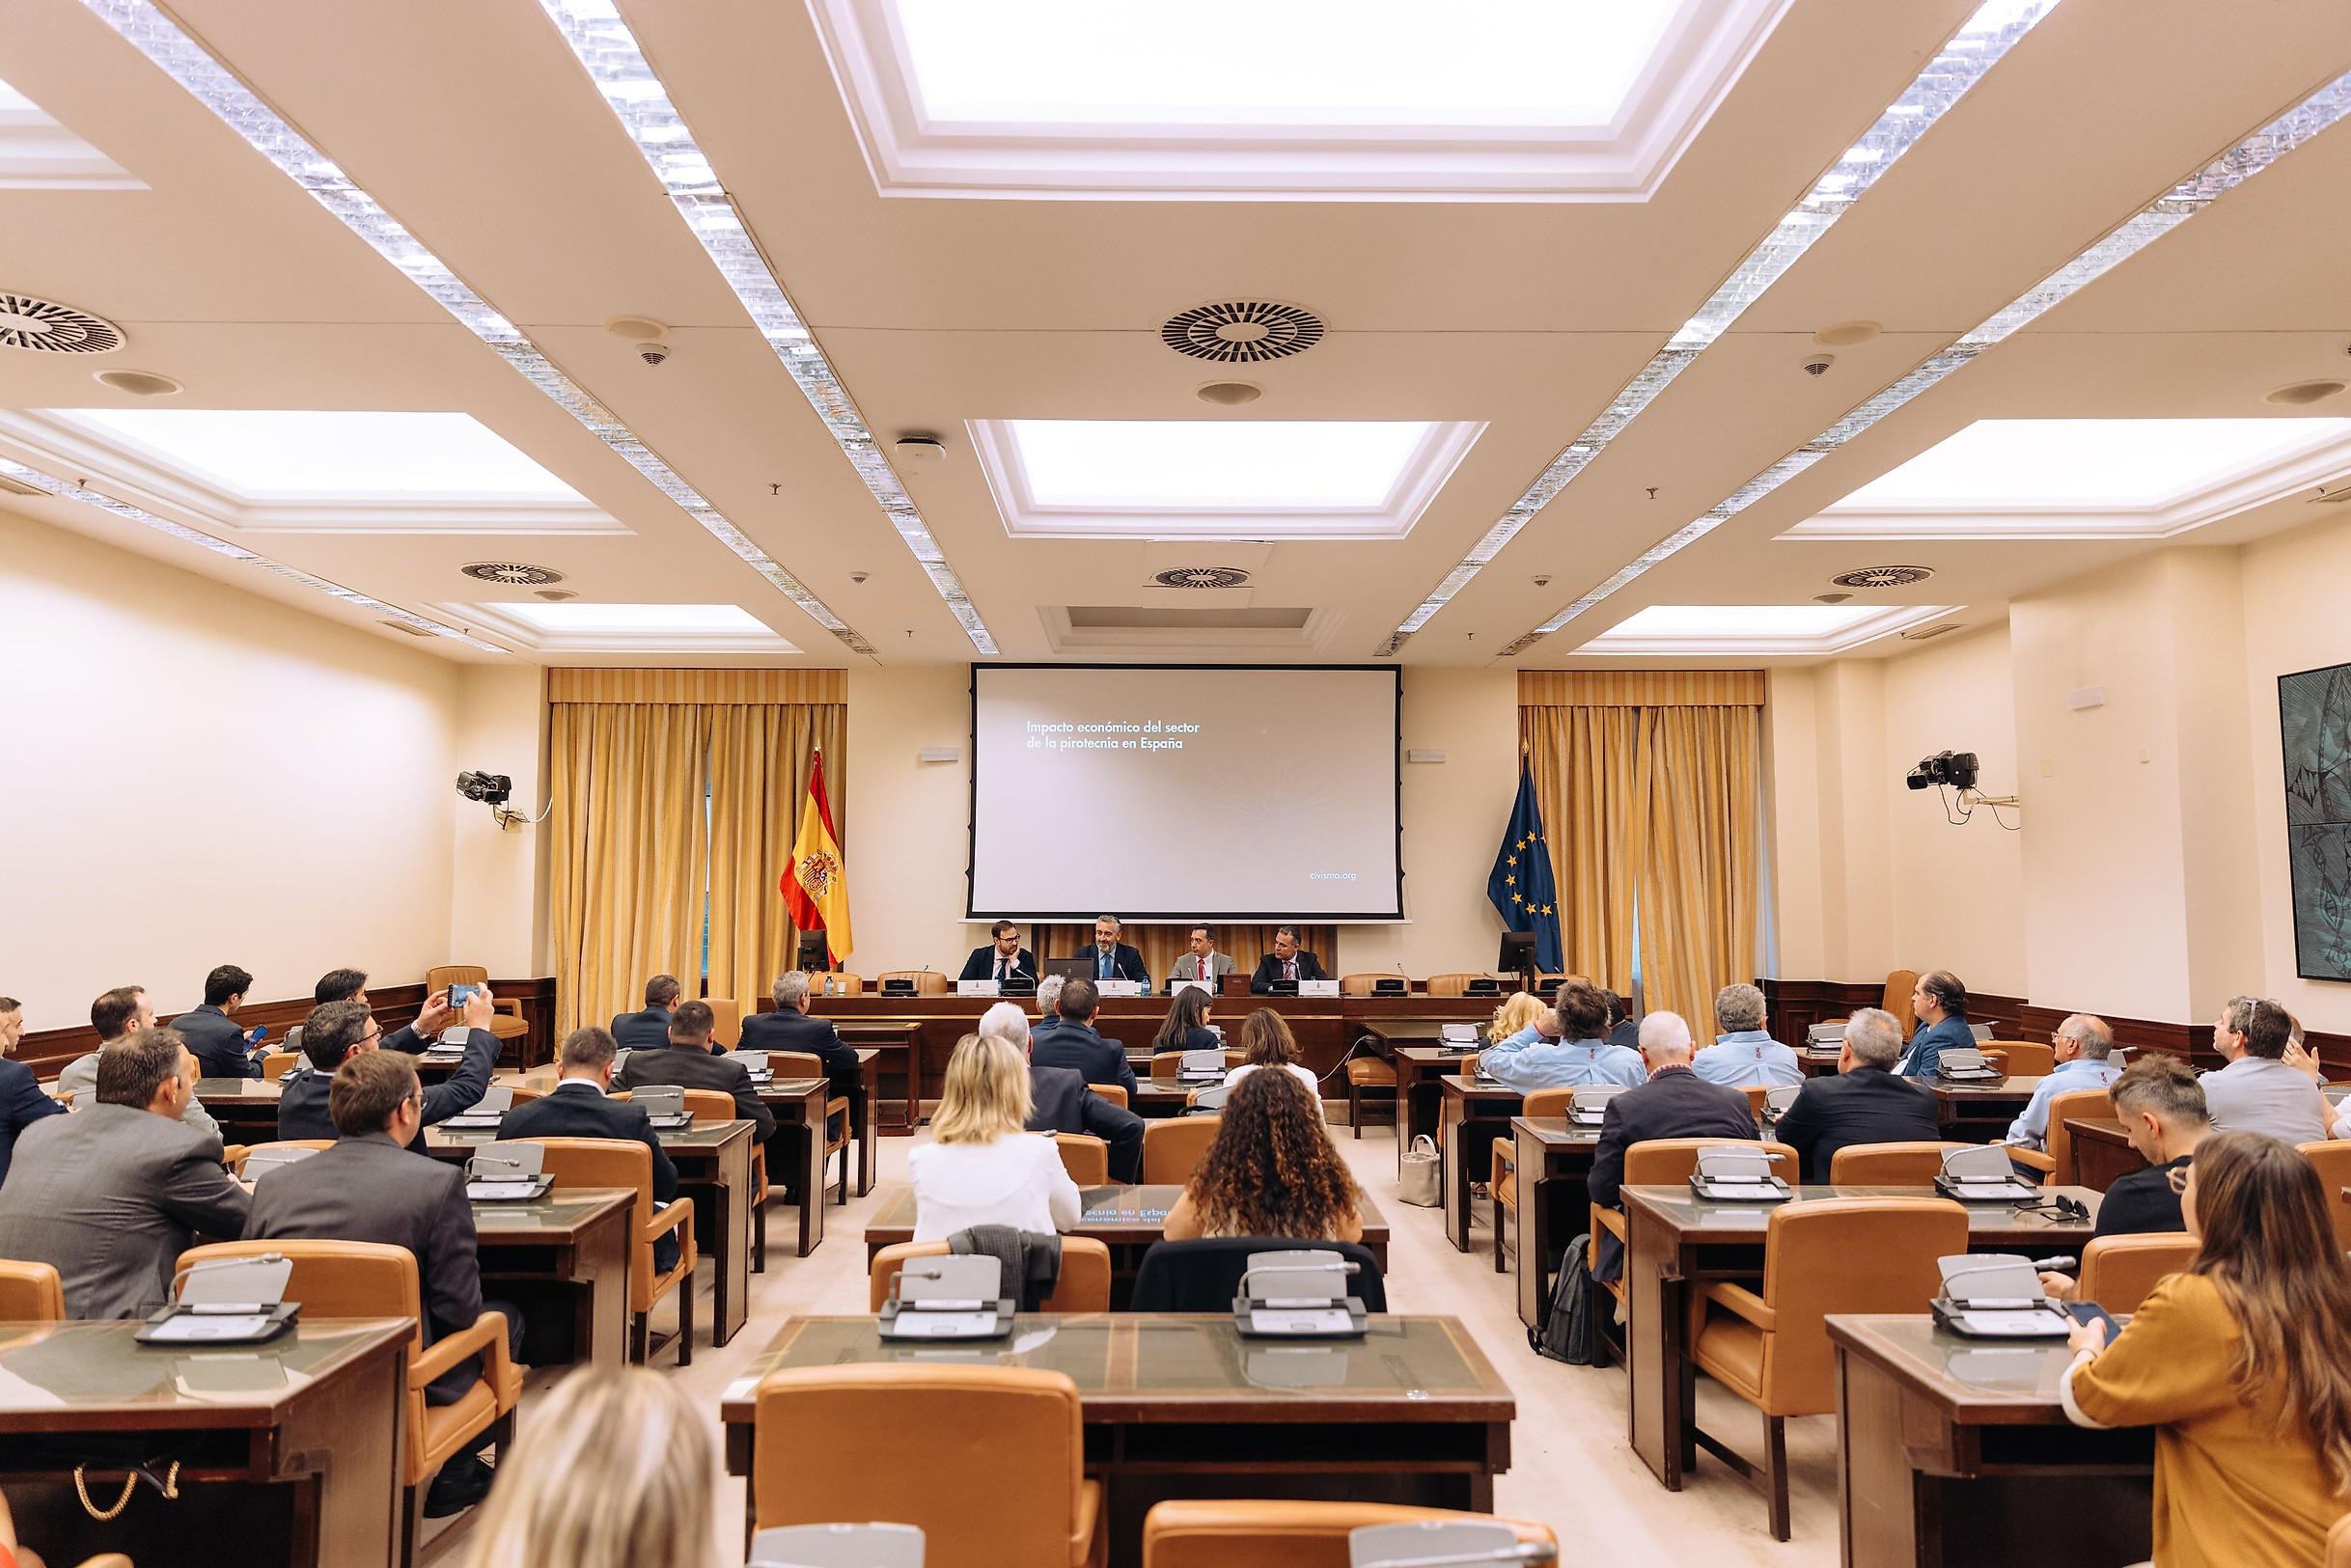 Presentación del informe «Impacto económico del sector de la pirotecnia en España» en el Congreso de los Diputados